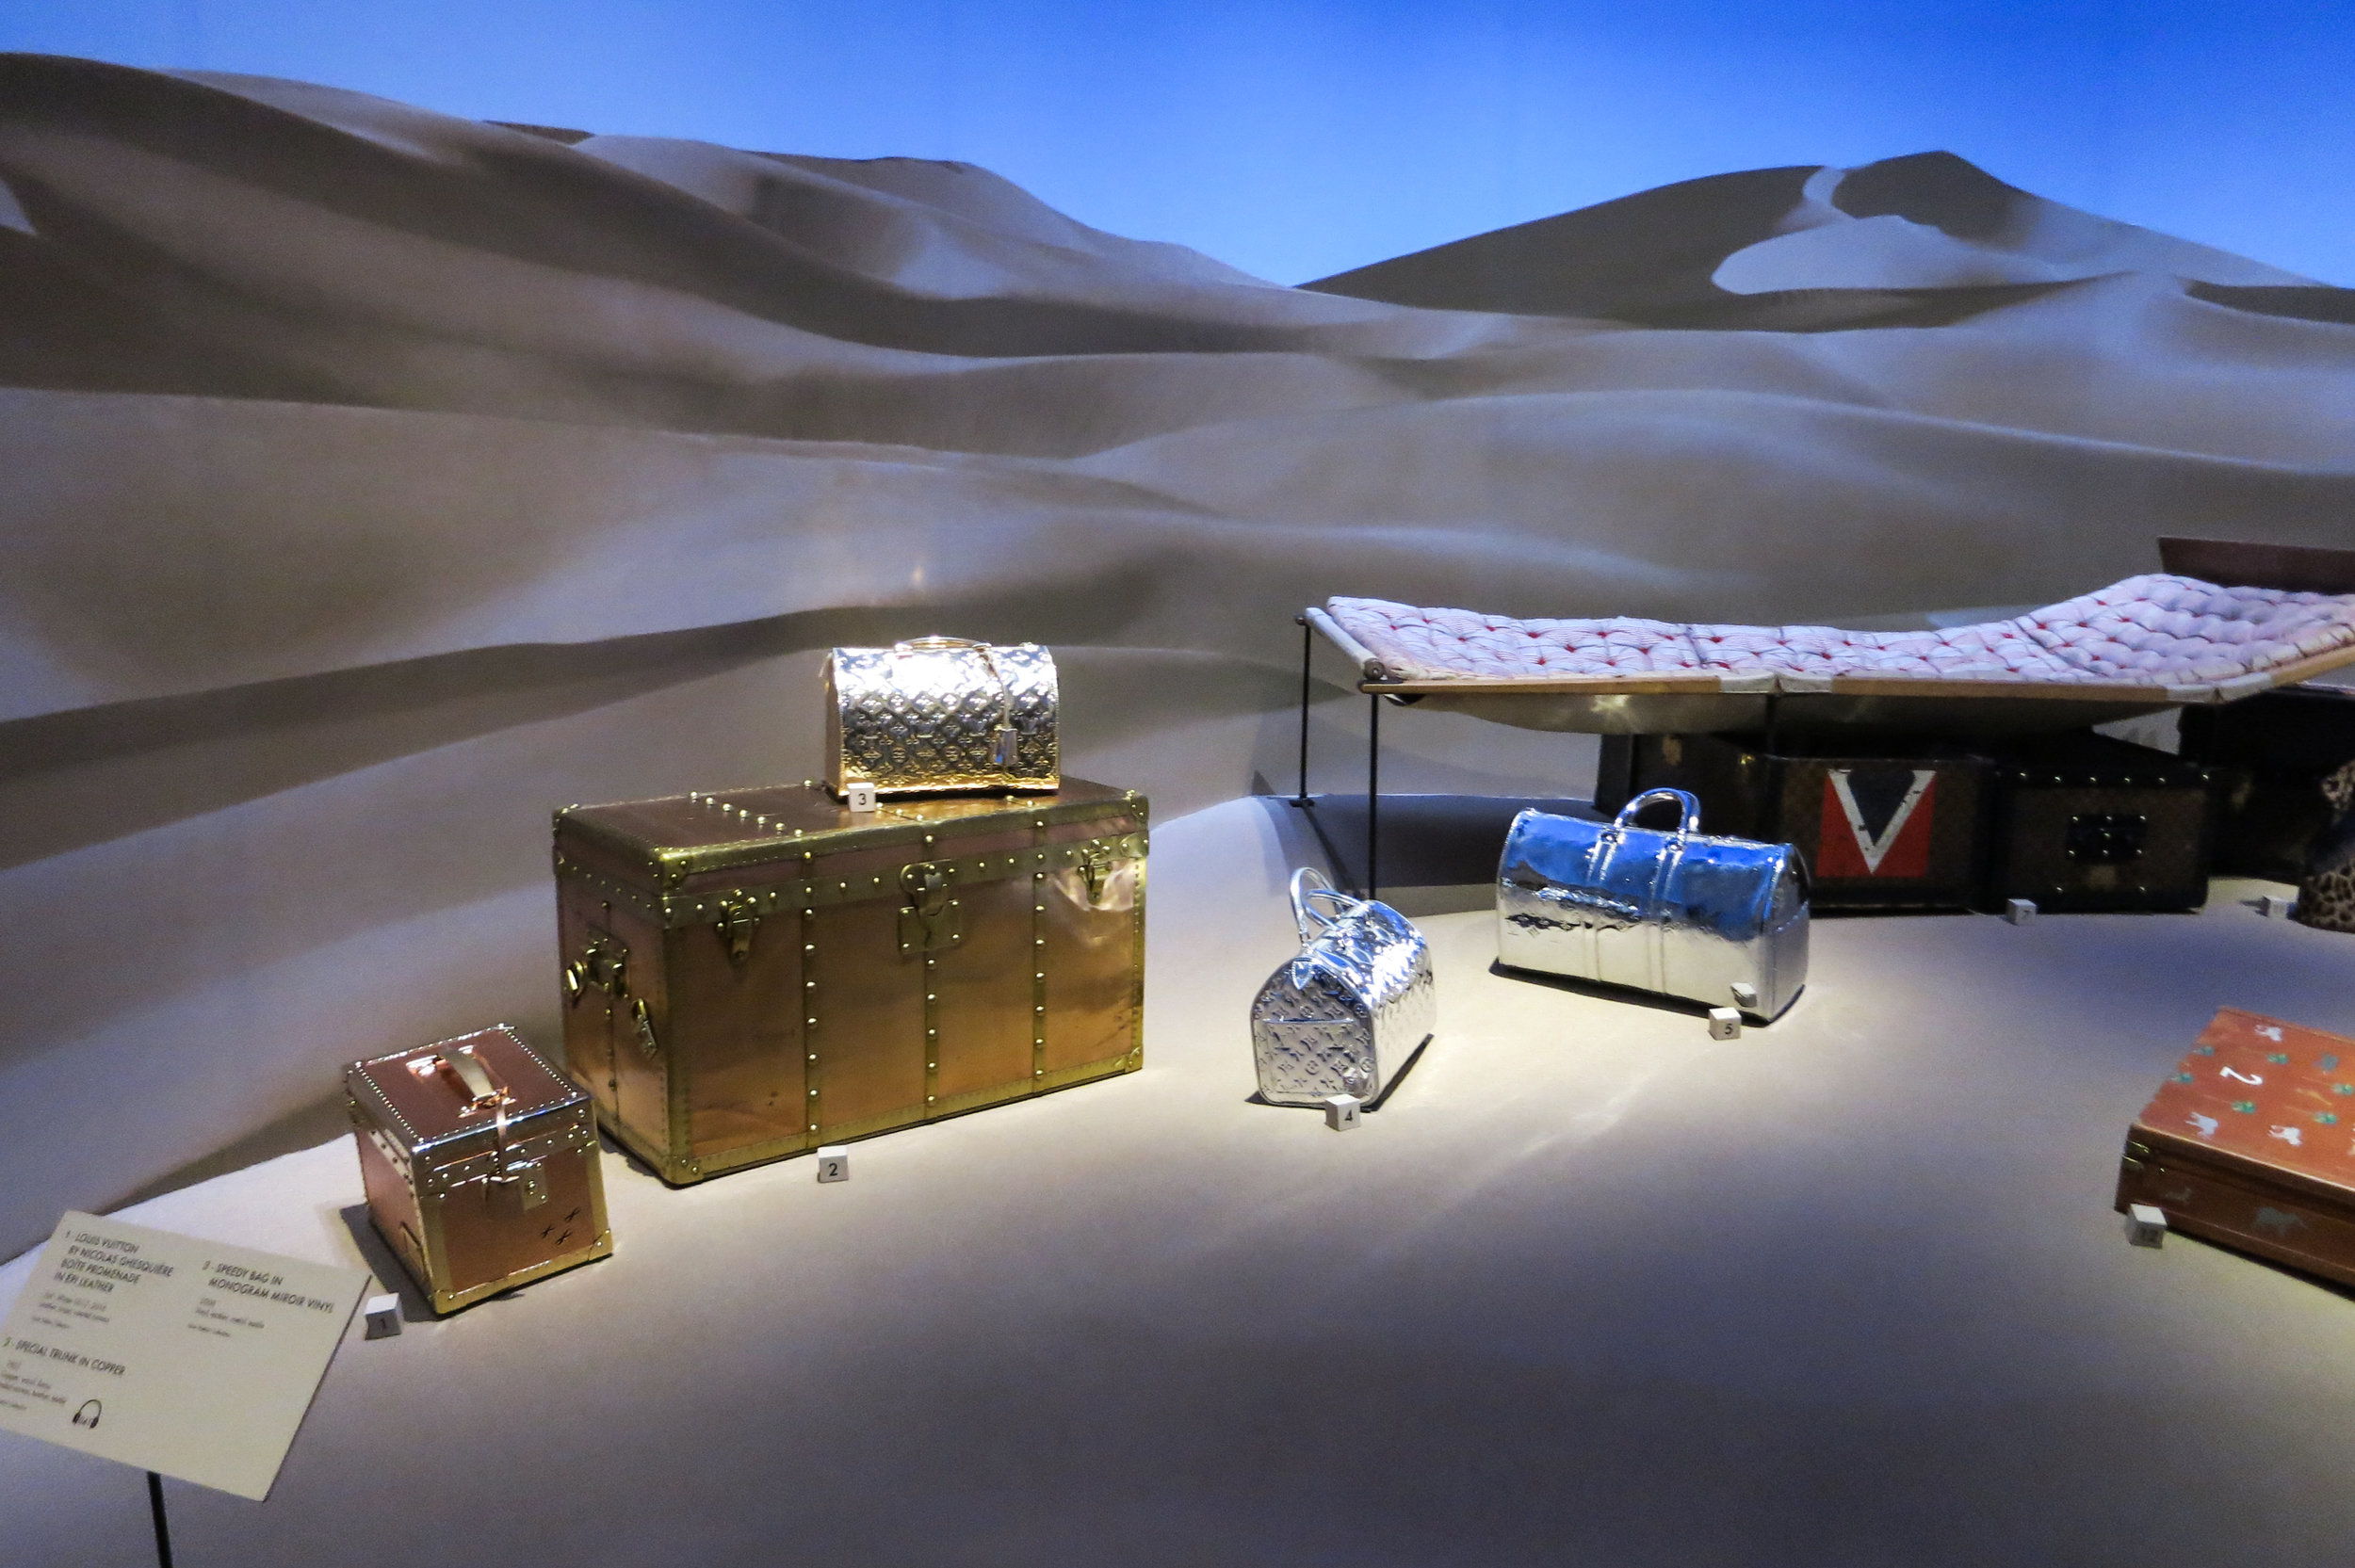 Louis Vuitton Volez Voguez Voyagez ShangHai Exhibition Tote Bag - Blue,  Women's Fashion, Bags & Wallets, Tote Bags on Carousell